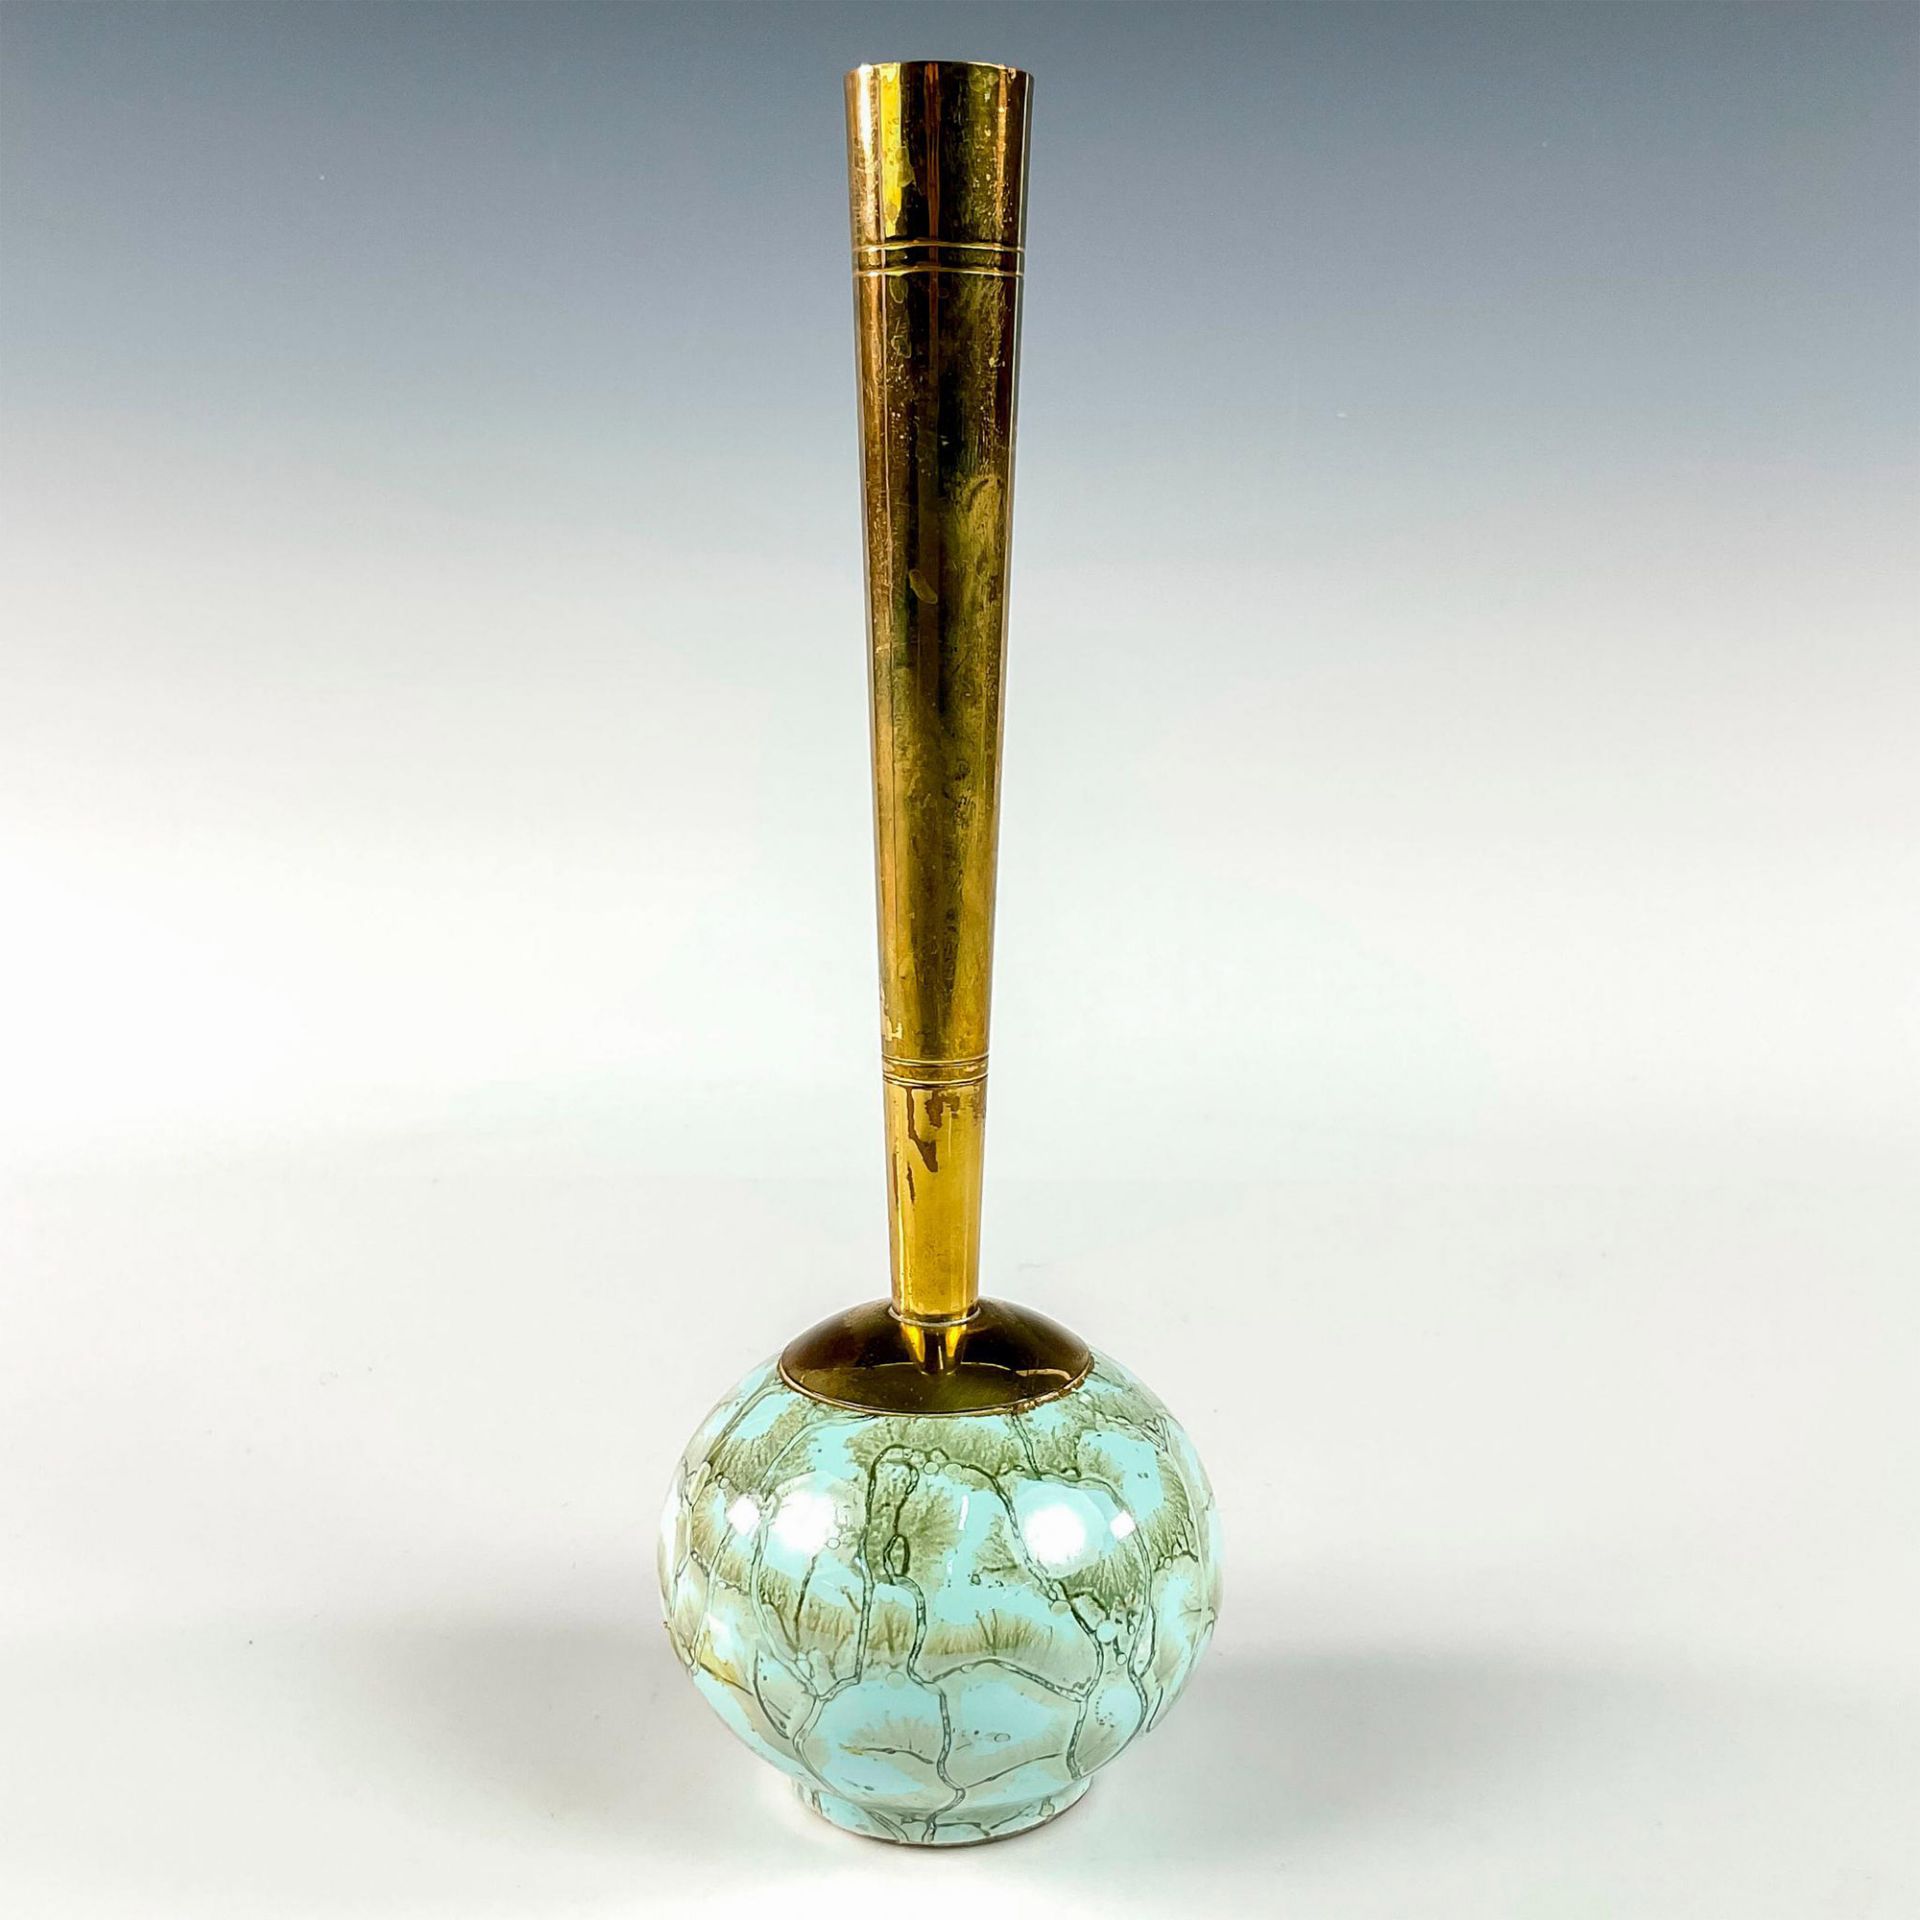 Unusual Delft Mid-Century Modern Lustre Glaze Bud Vase - Image 2 of 3